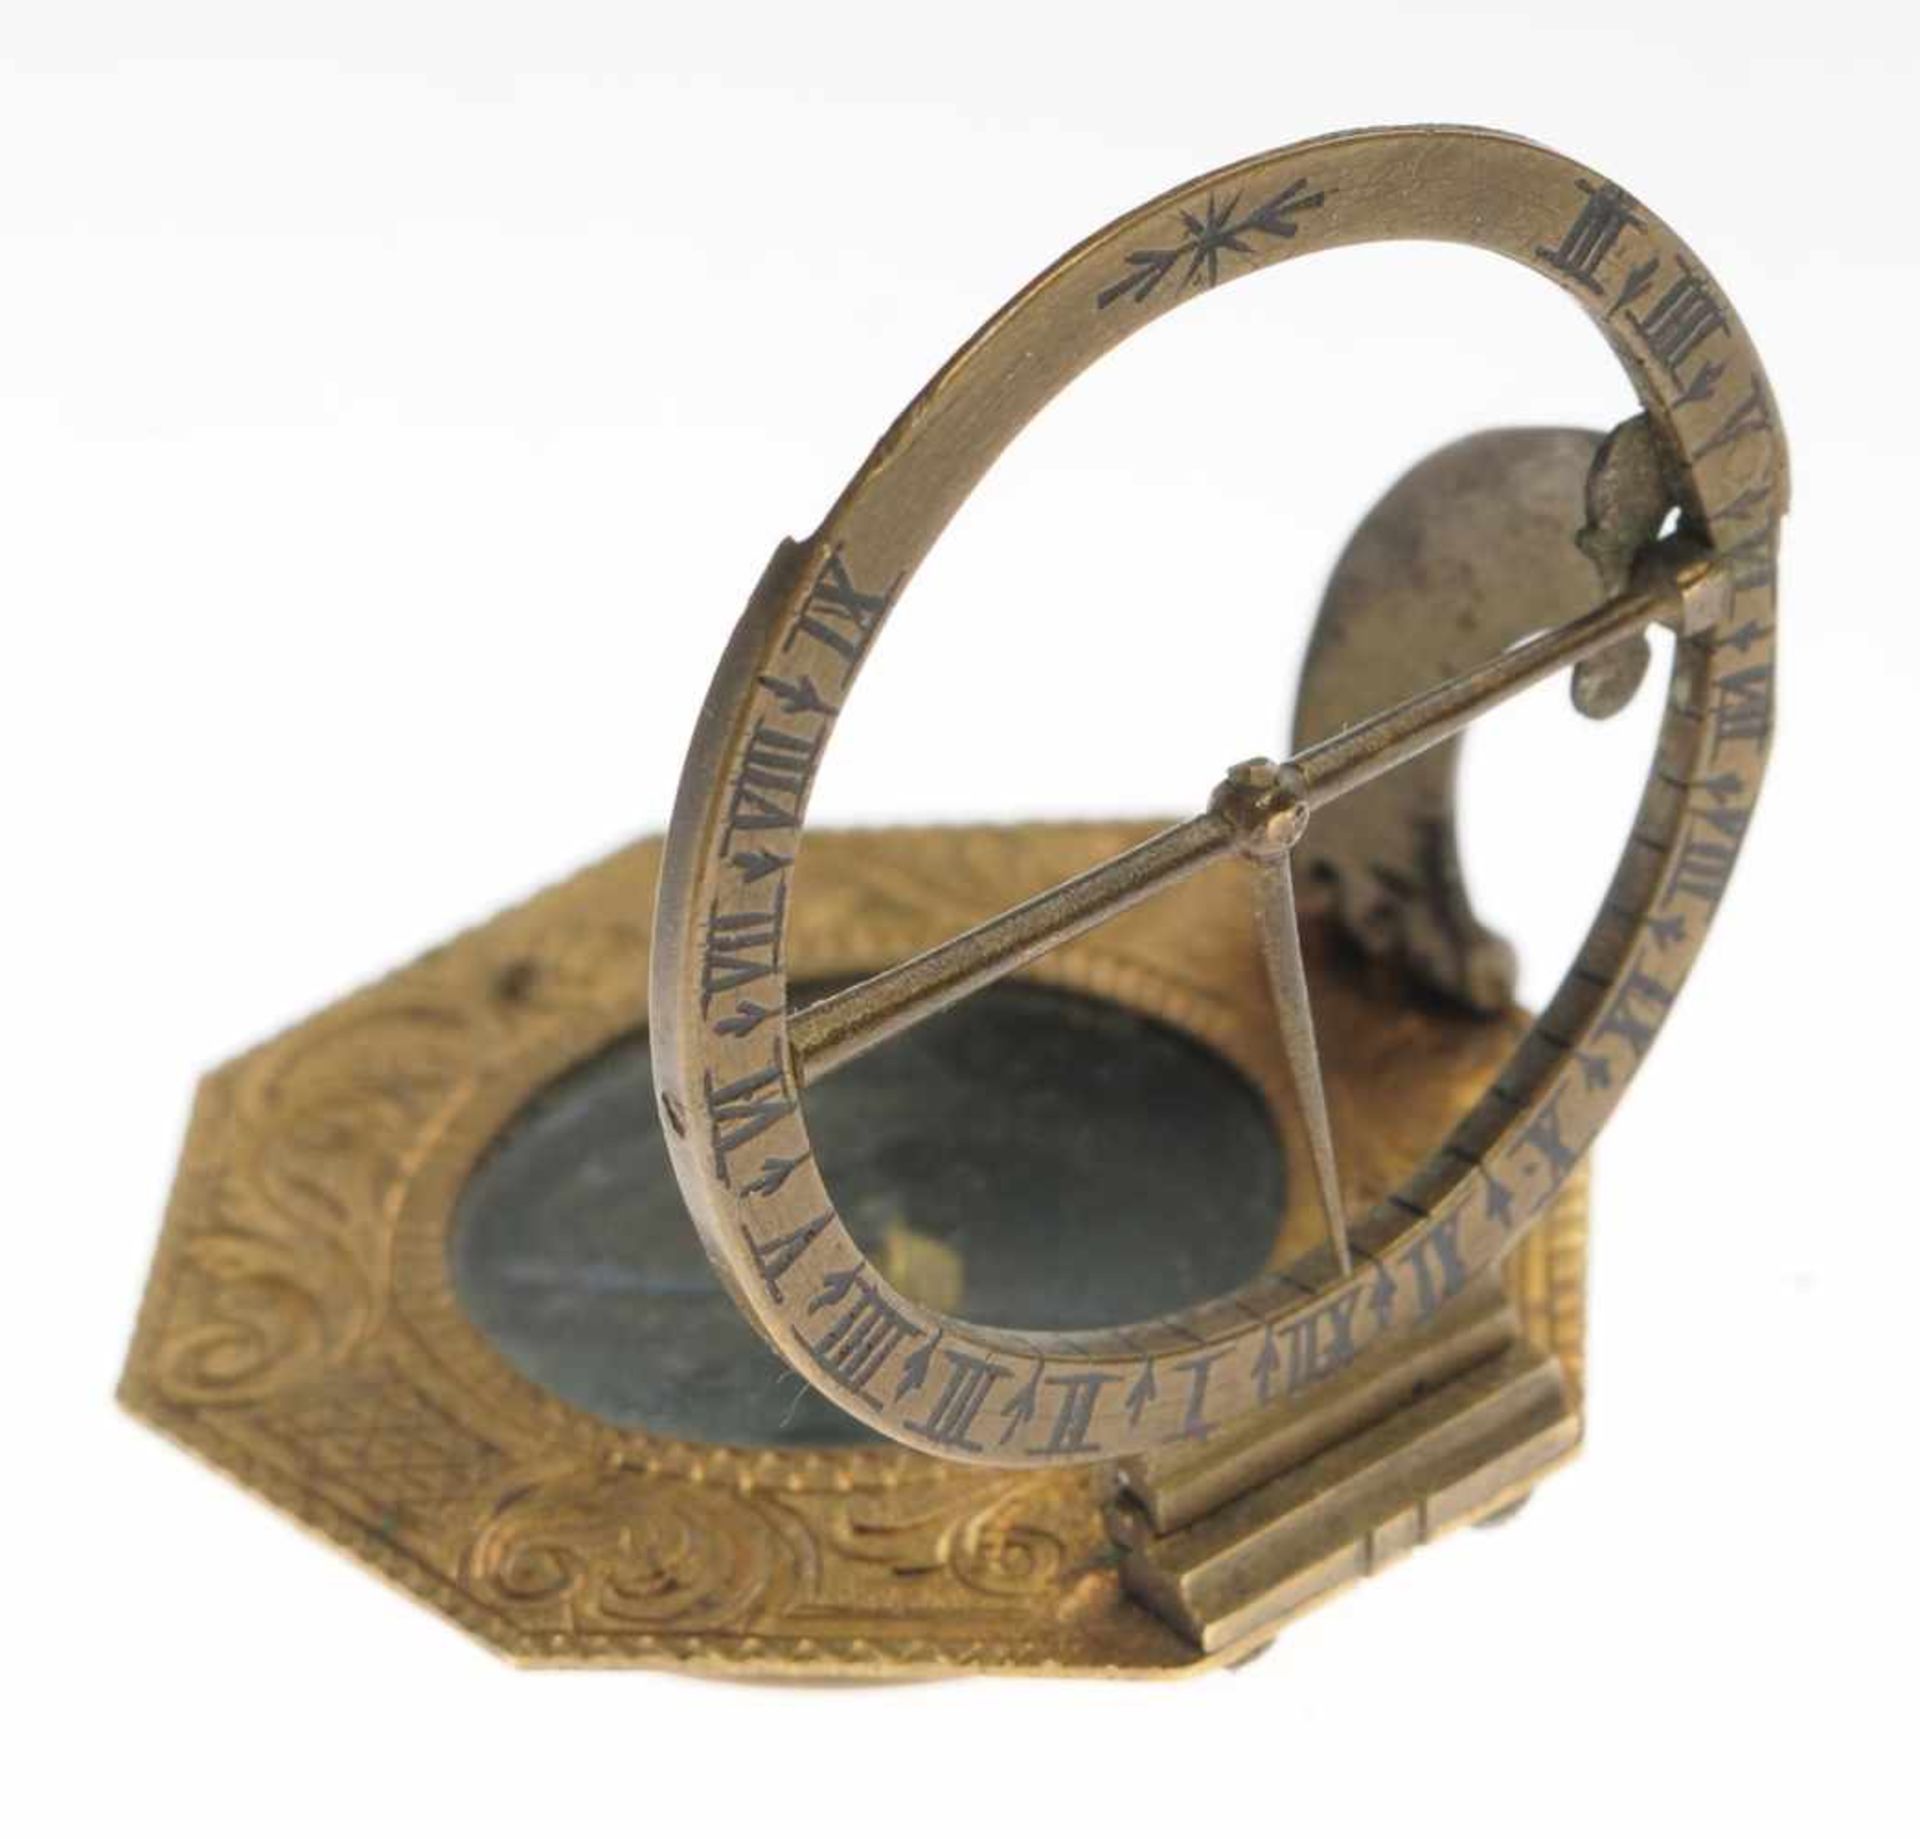 Äquatorialer KompassMessing. Oktogonales Gehäuse mit Kompass u. grav. Akanthusdekor. Stundenskala, - Bild 4 aus 9